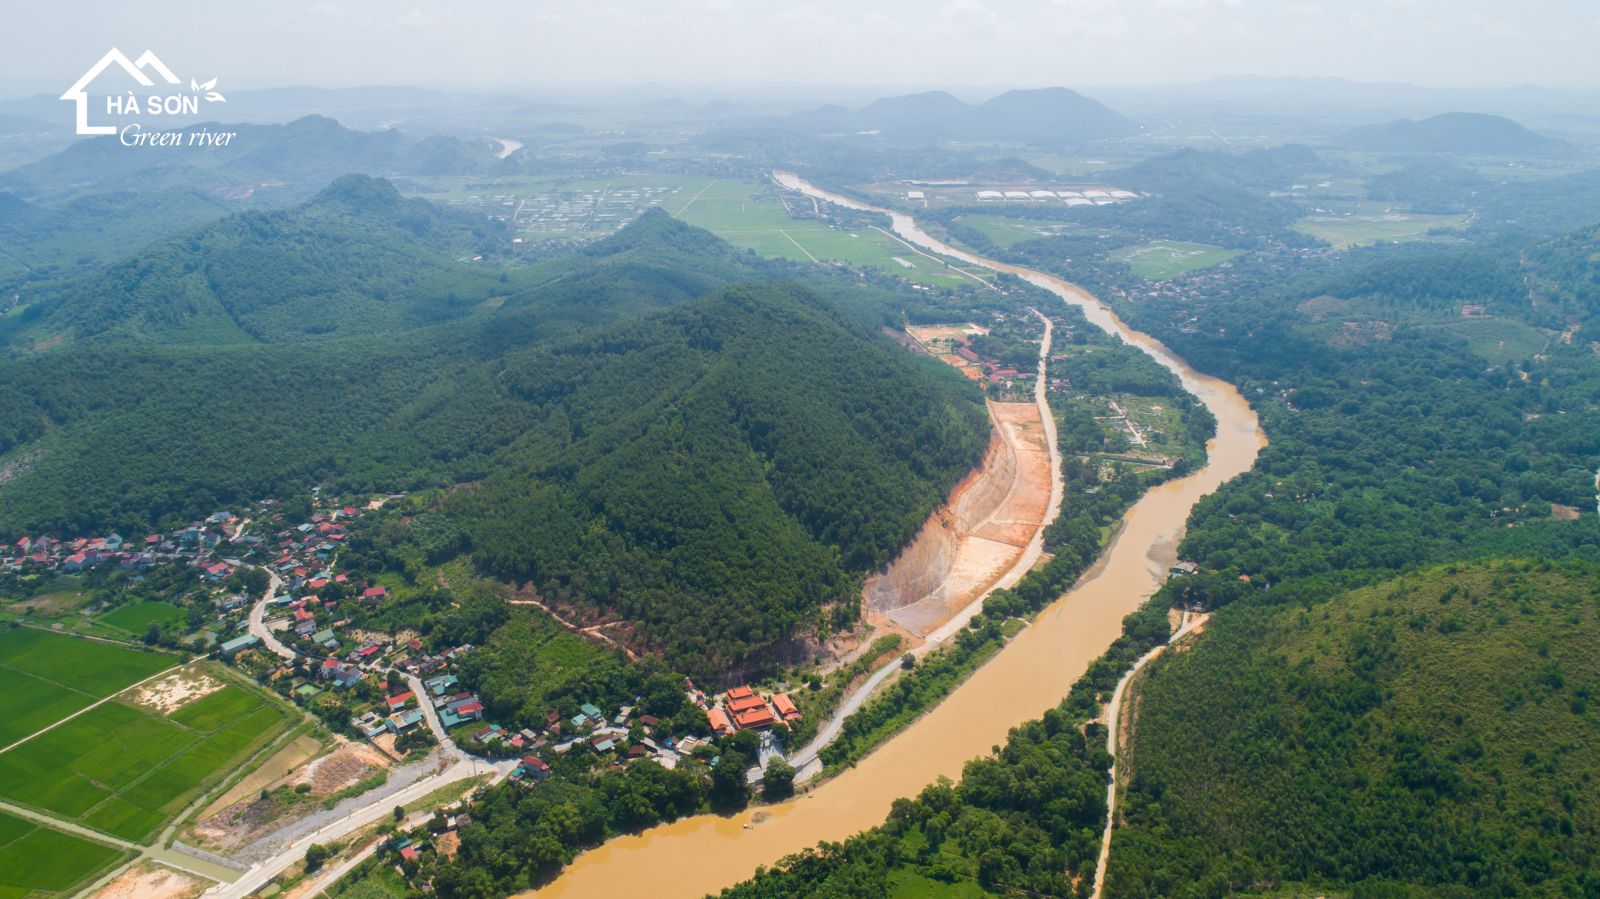 Hình ảnh thực tế Dự án Hà Sơn Green River